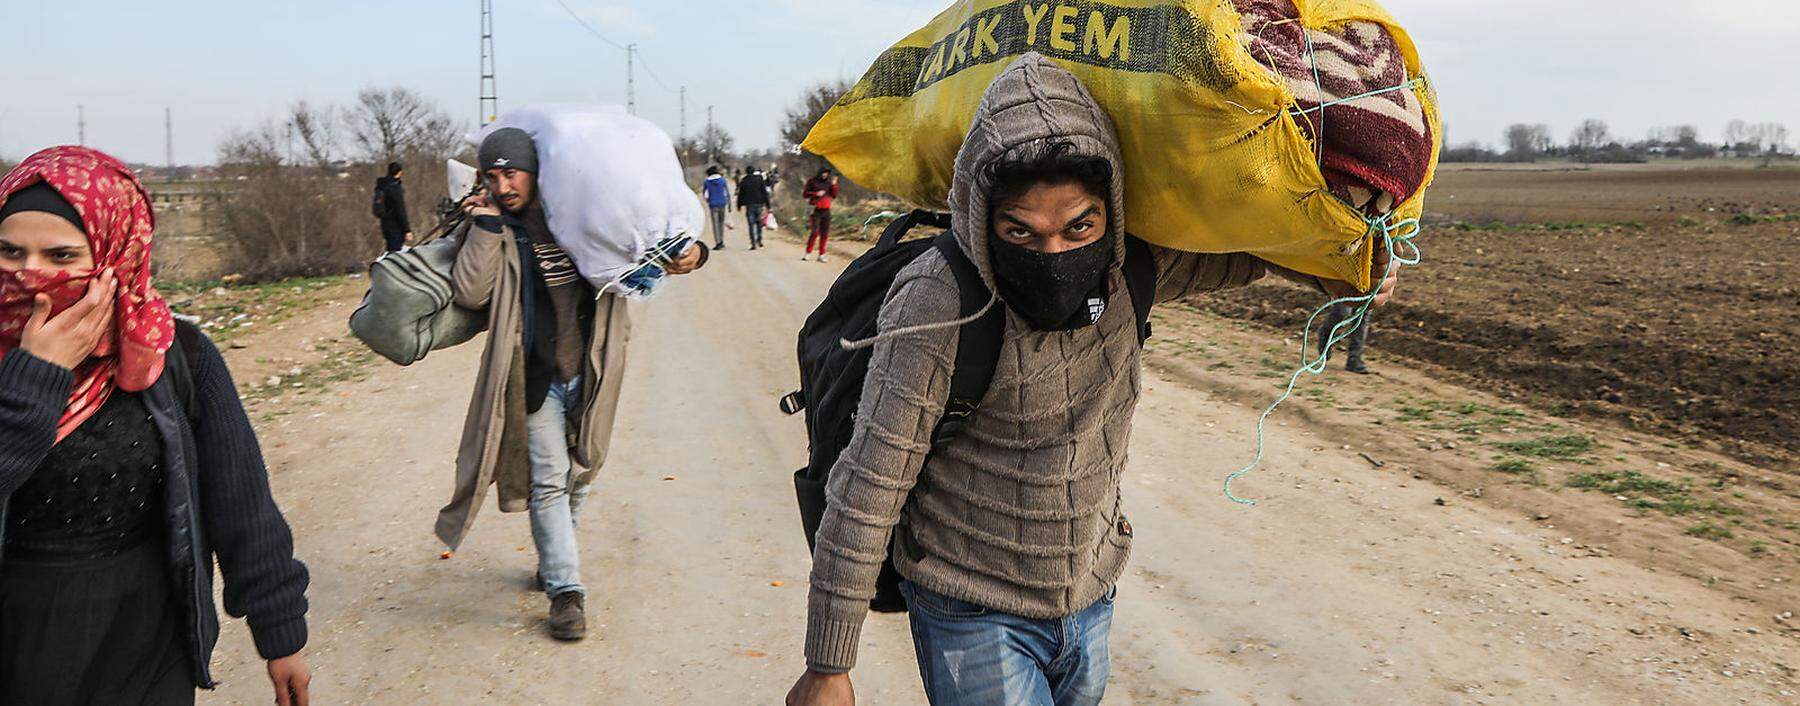 Auf dem Weg nach Griechenland: Flüchtlinge sammeln sich im Grenzgebiet.